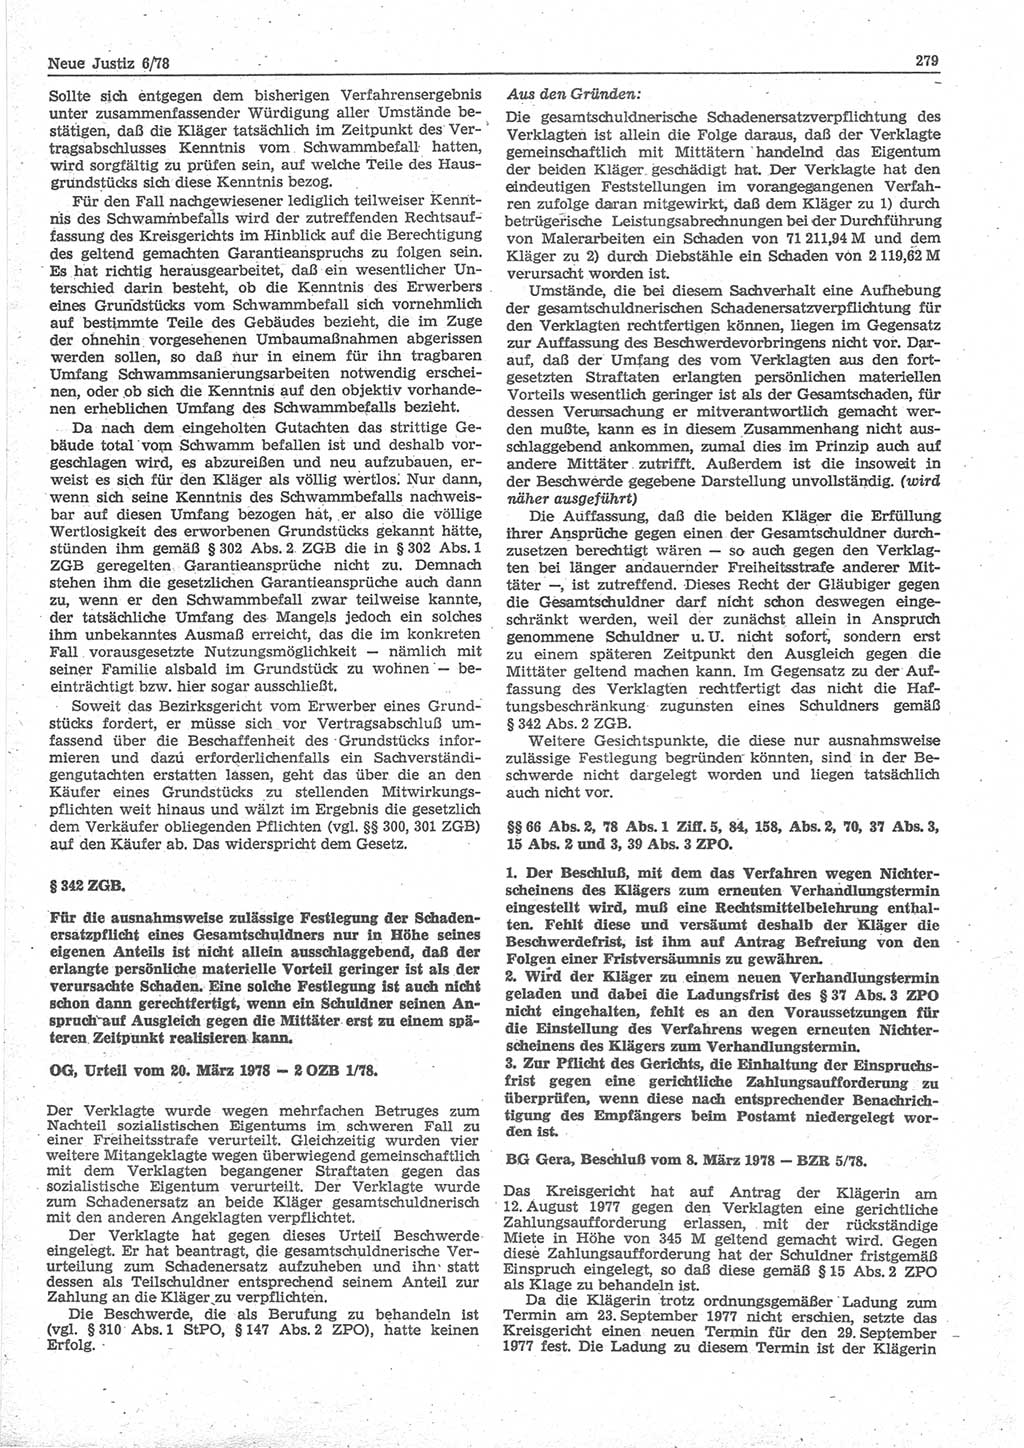 Neue Justiz (NJ), Zeitschrift für sozialistisches Recht und Gesetzlichkeit [Deutsche Demokratische Republik (DDR)], 32. Jahrgang 1978, Seite 279 (NJ DDR 1978, S. 279)